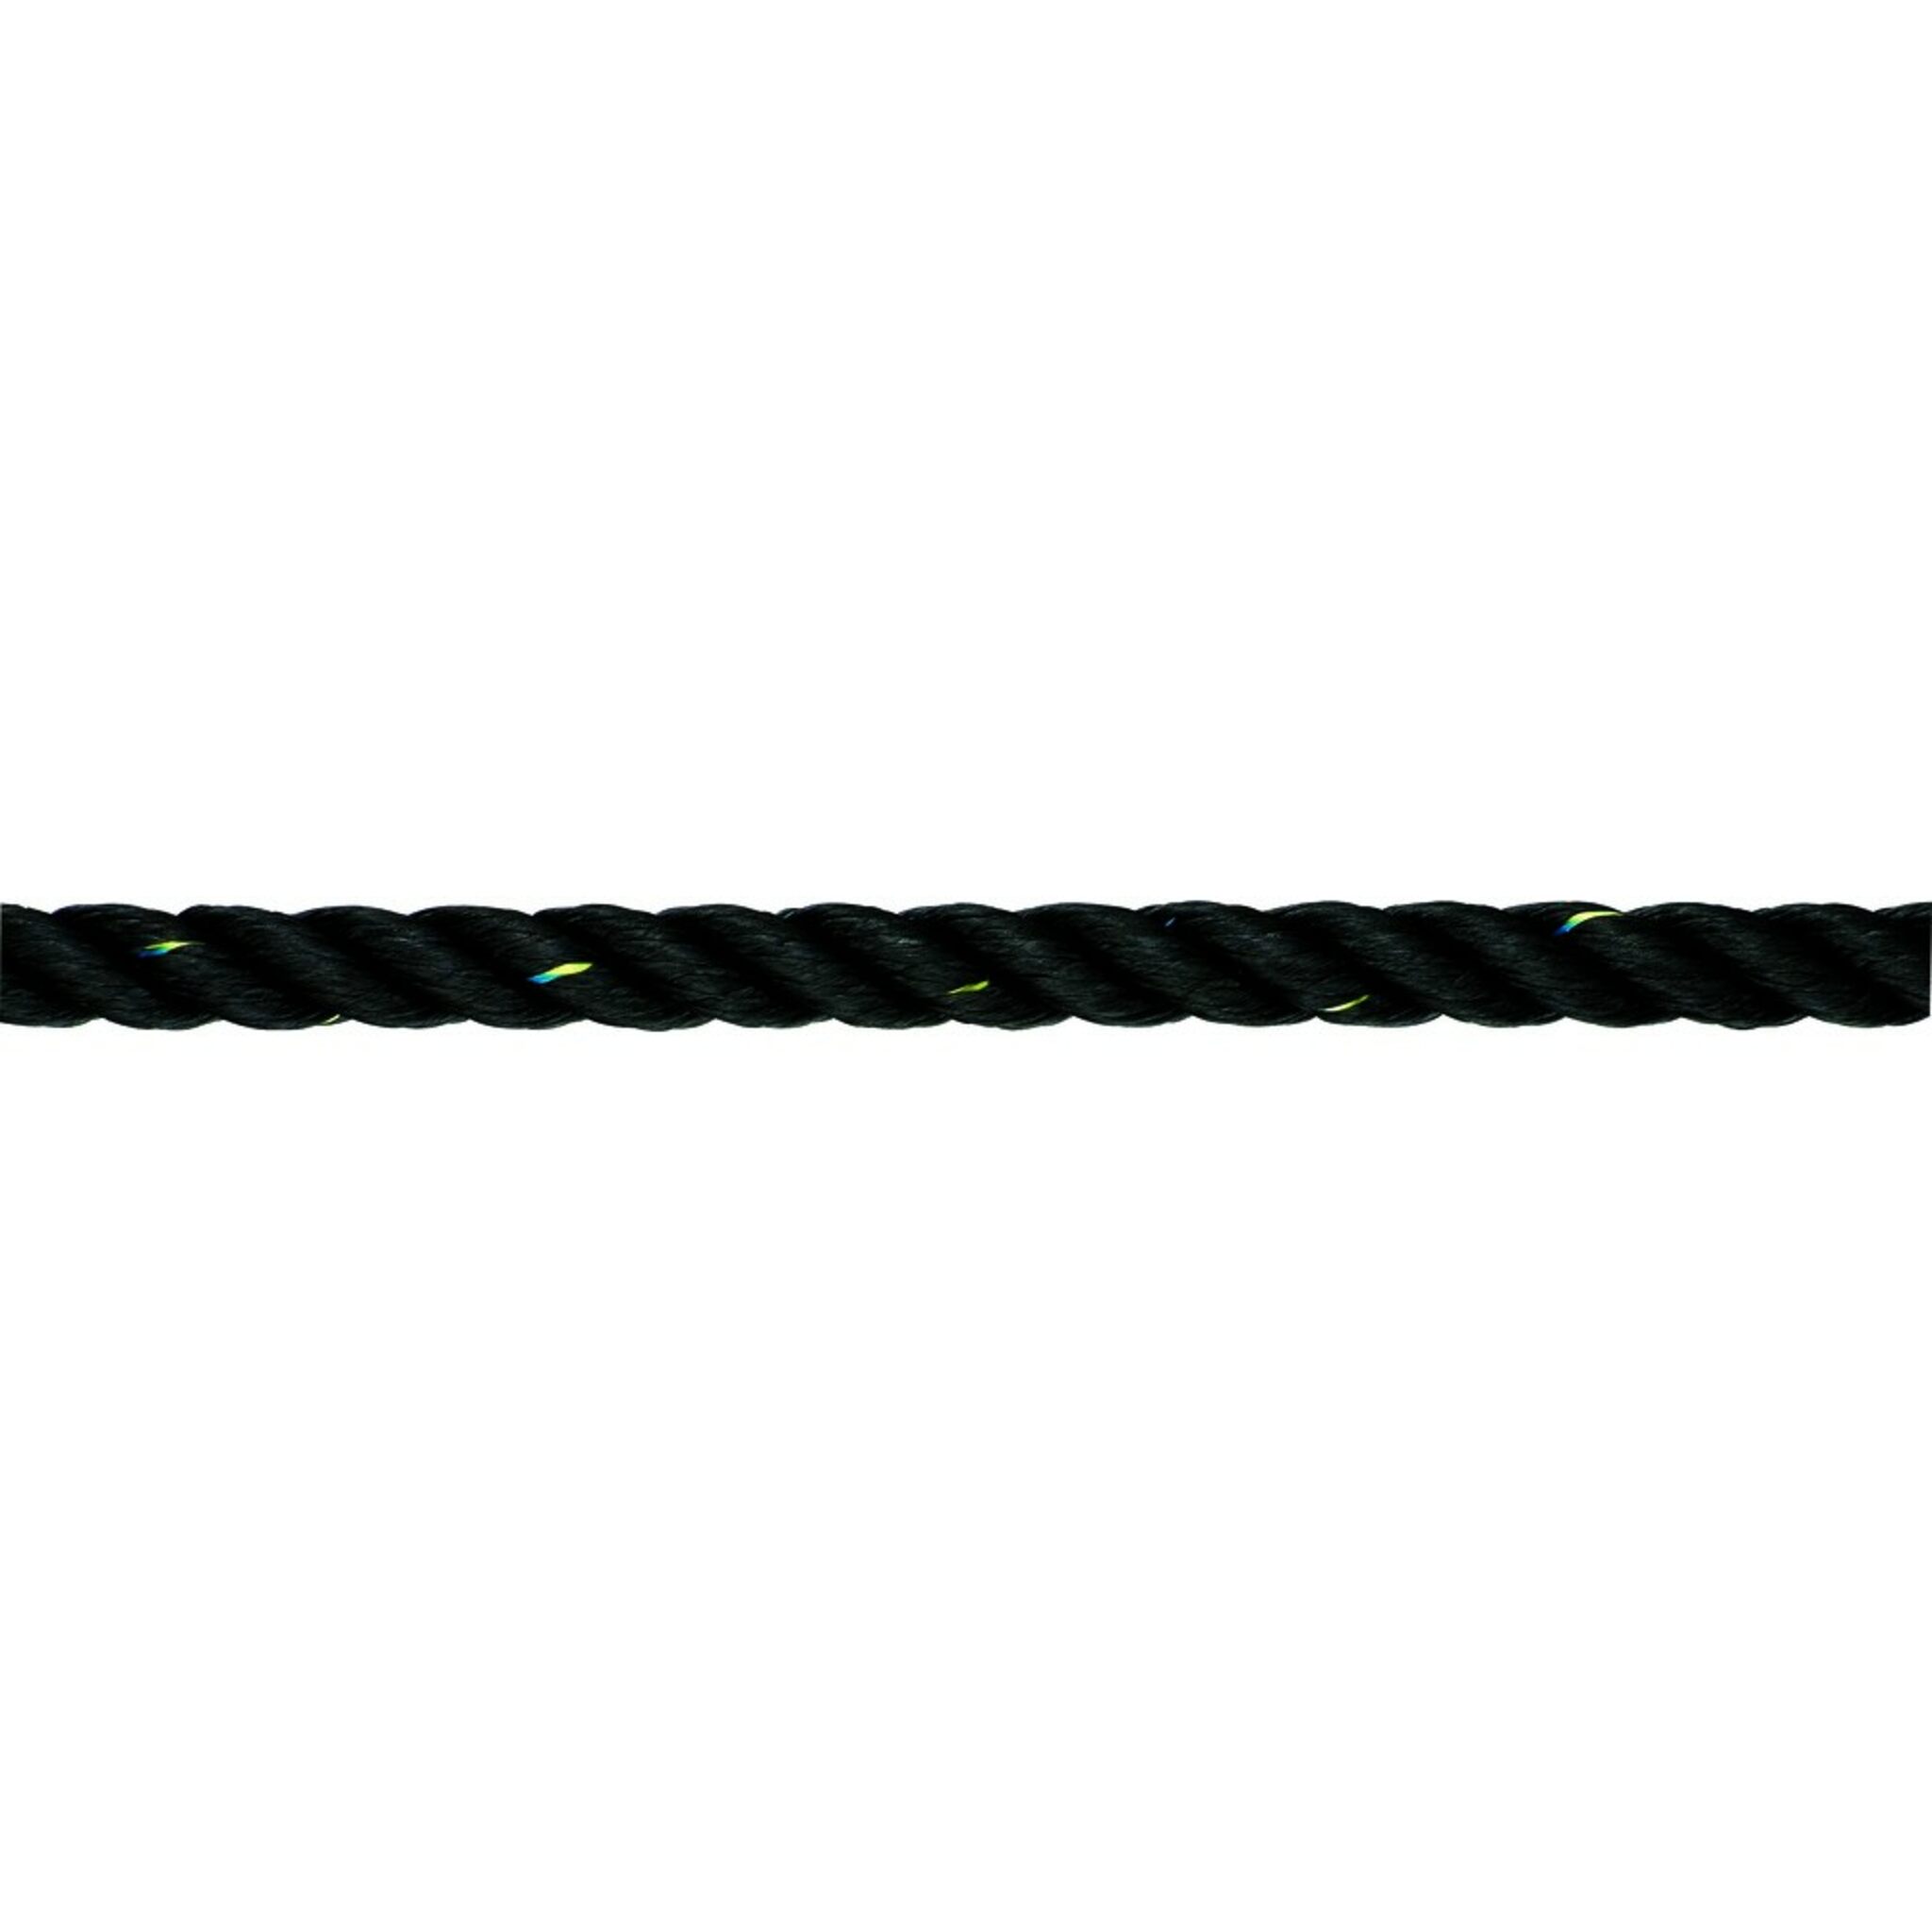 LIROS mooring rope PES in black